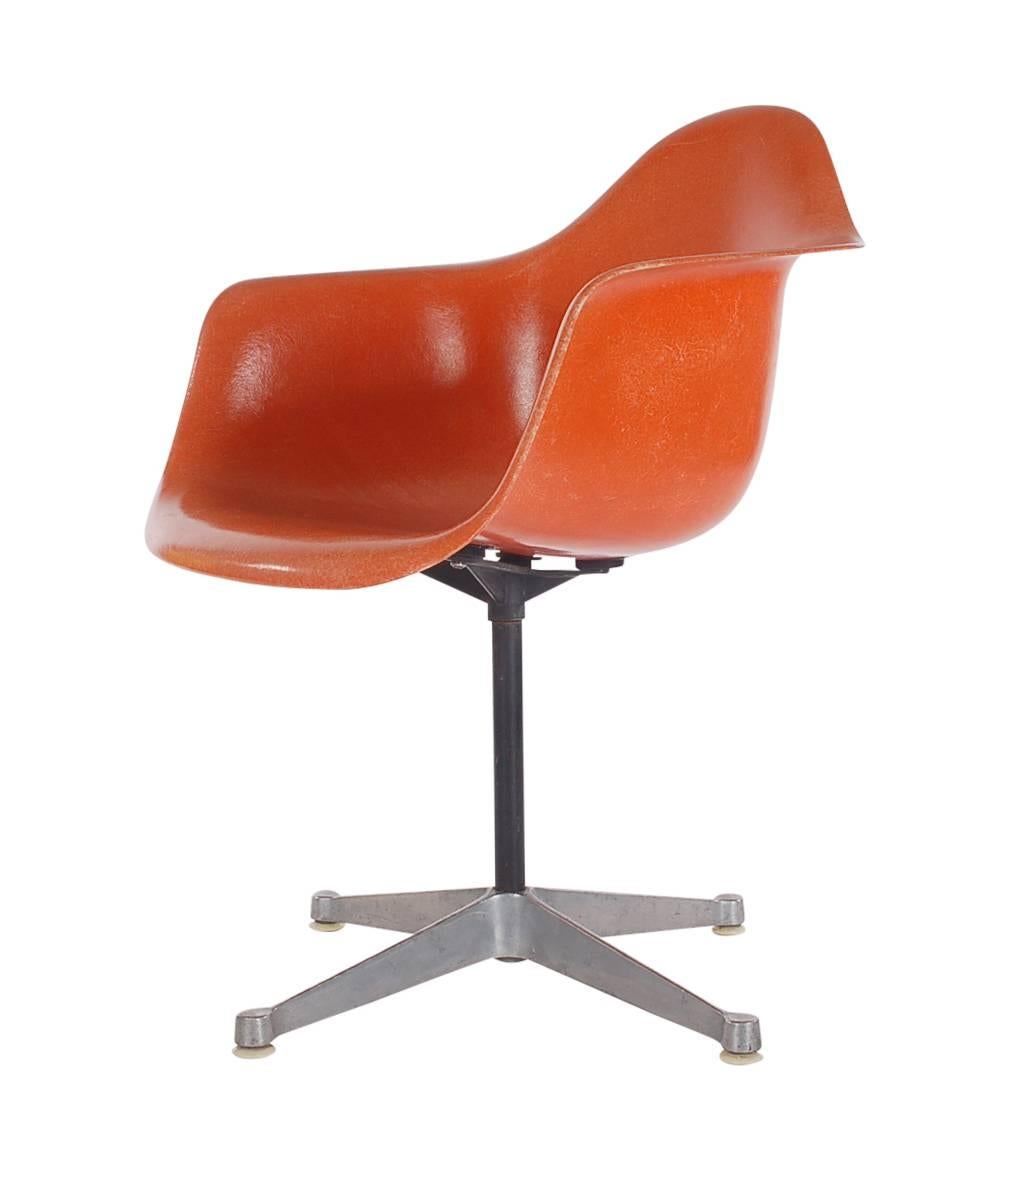 Hier haben wir einen ikonischen Designklassiker aus der Mid-Century Modern-Periode. Dieser Vintage-Schalenstuhl aus Fiberglas wurde von Charles Eames entworfen und von Herman Miller um 1972 hergestellt. Ich habe ein tolles kultiges Retro-Orange.